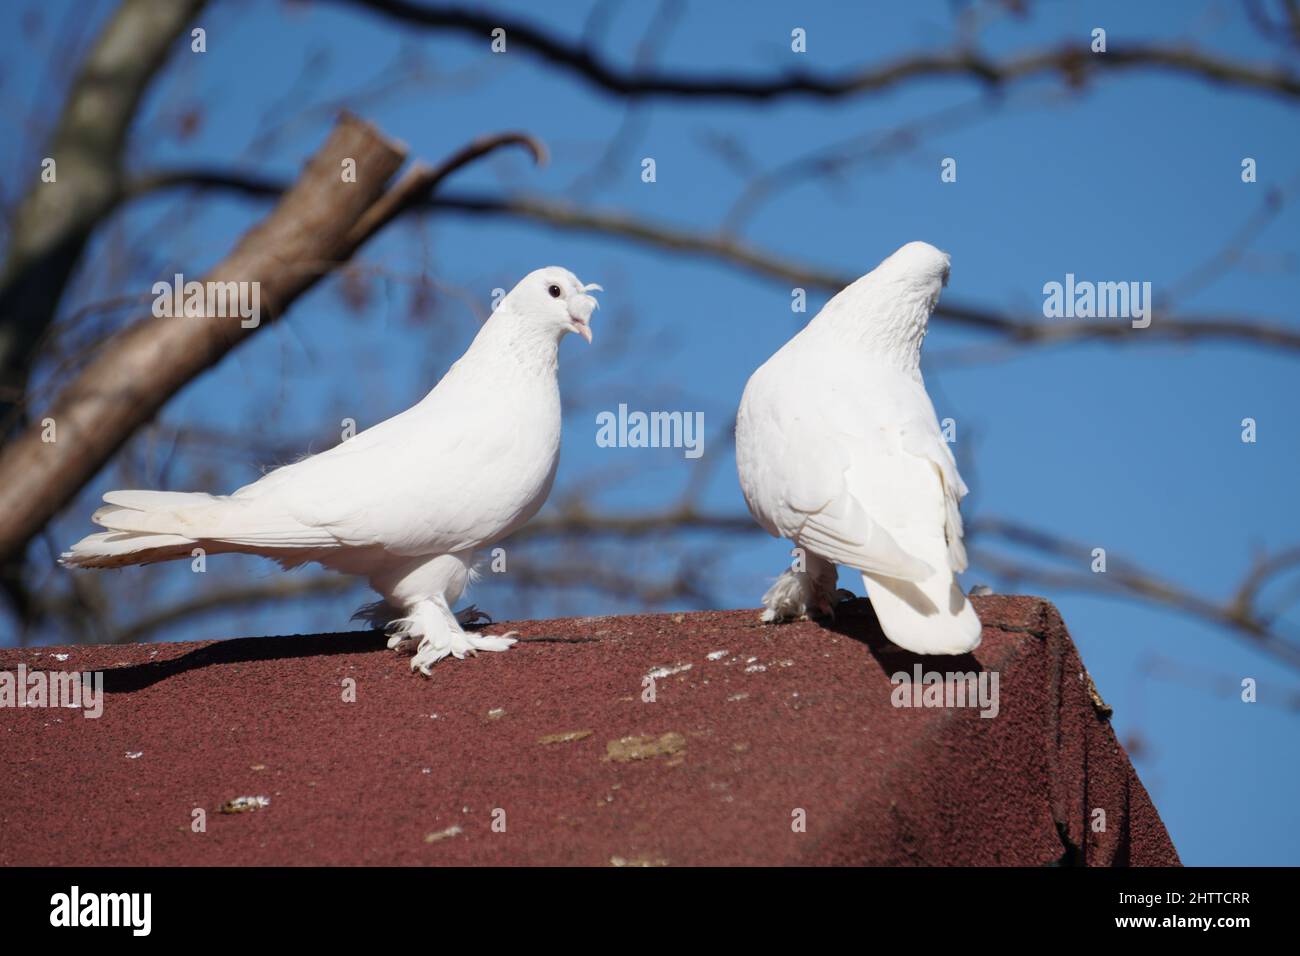 Symbole de paix colombes blanches Banque D'Images